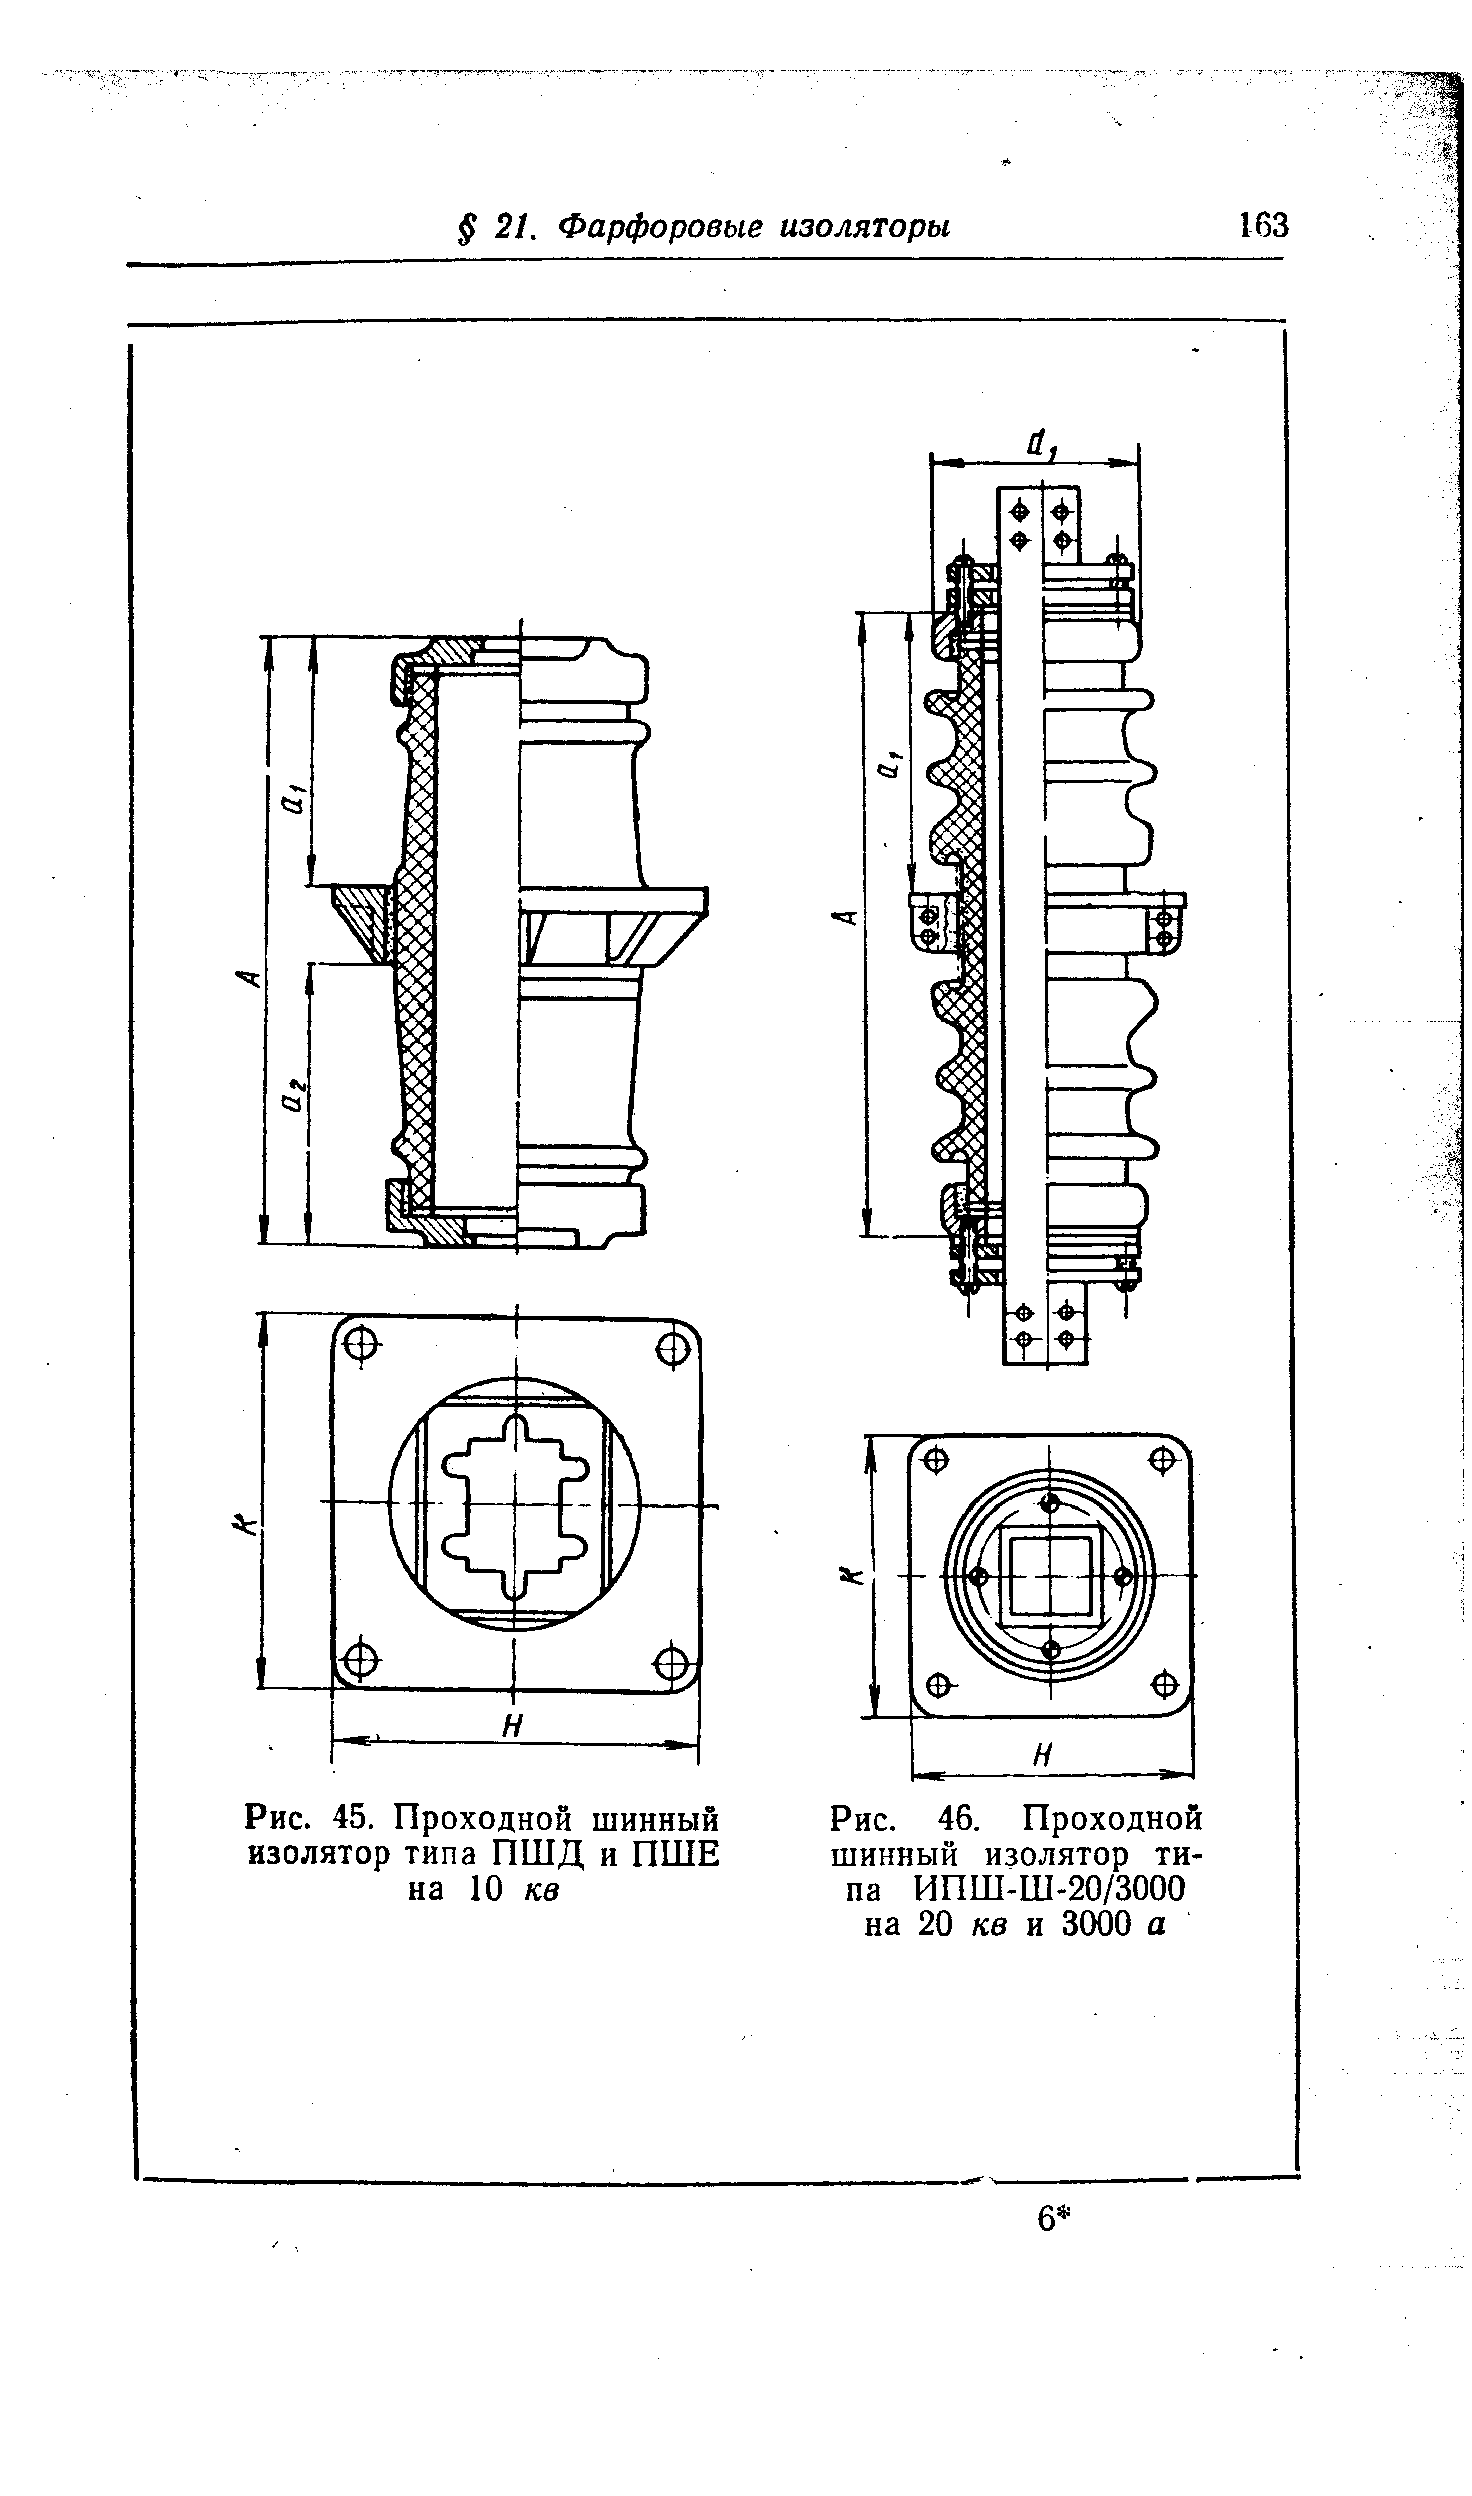 Рис. 46. Проходной шинный изолятор типа ИПШ-Ш-20/3000 на 20 кв и 3000 а
